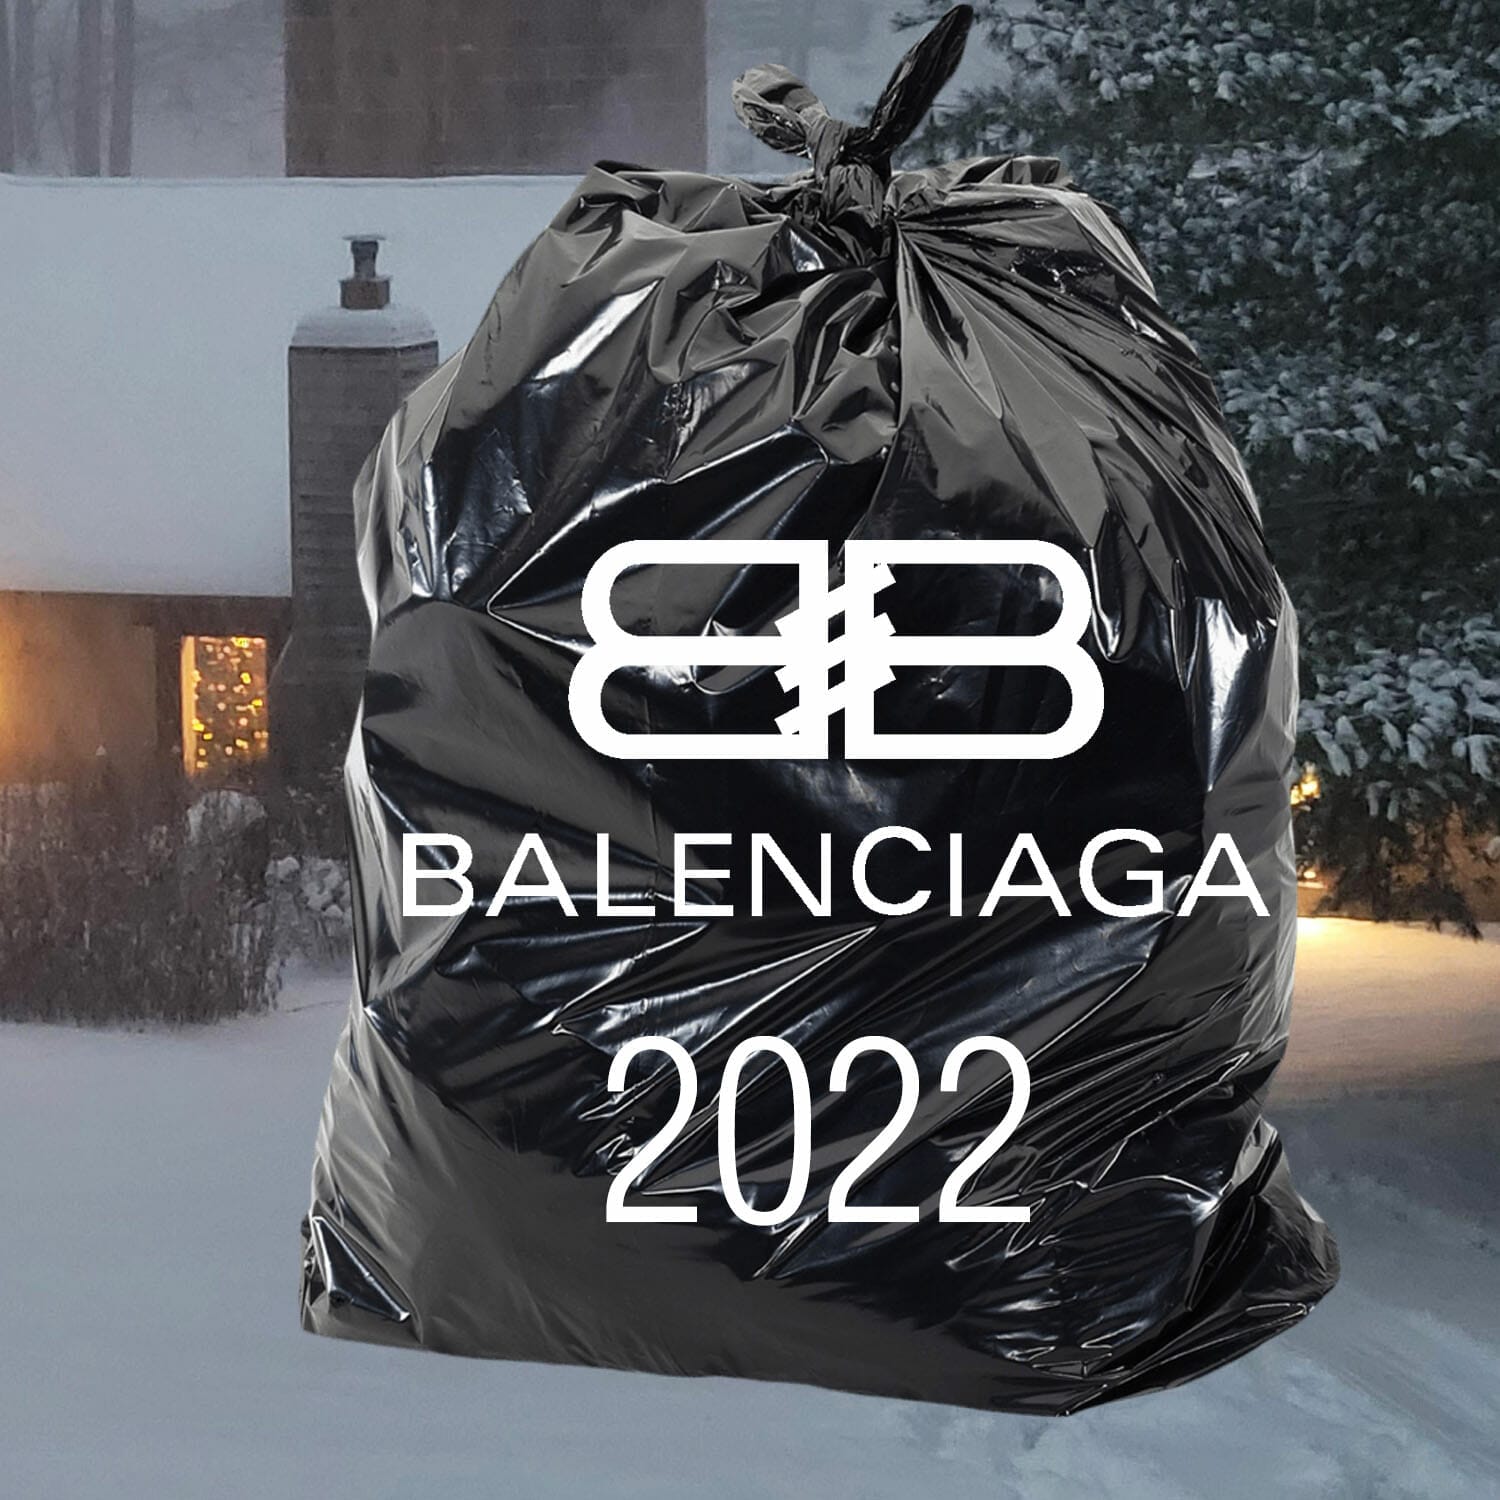 Balenciaga 2022 trash bag by RUNWAY MAGAZINE ® Collections. RUNWAY NOW / RUNWAY NEW